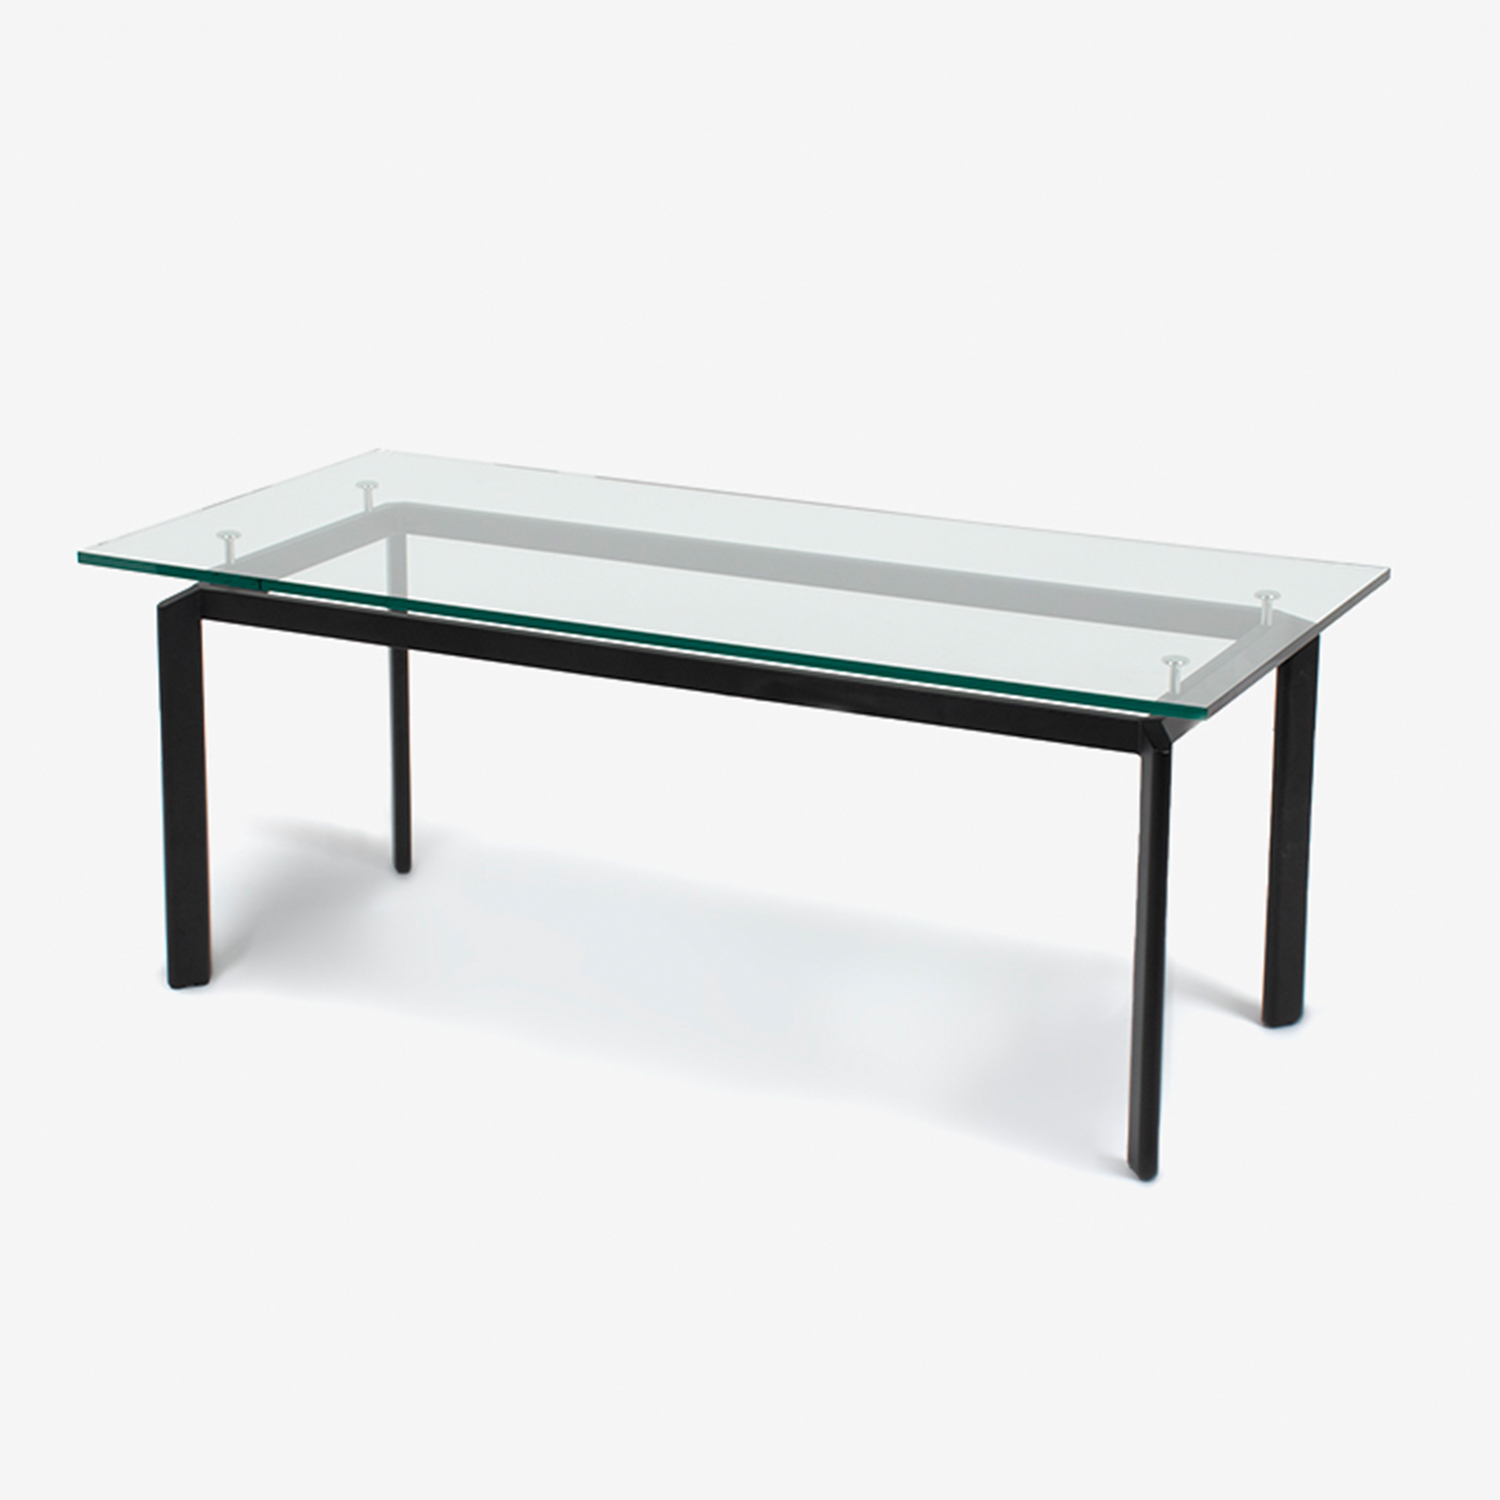 ダイニングテーブル「レキシア」脚幅165cmクリアガラス脚ブラック色天板全2サイズ